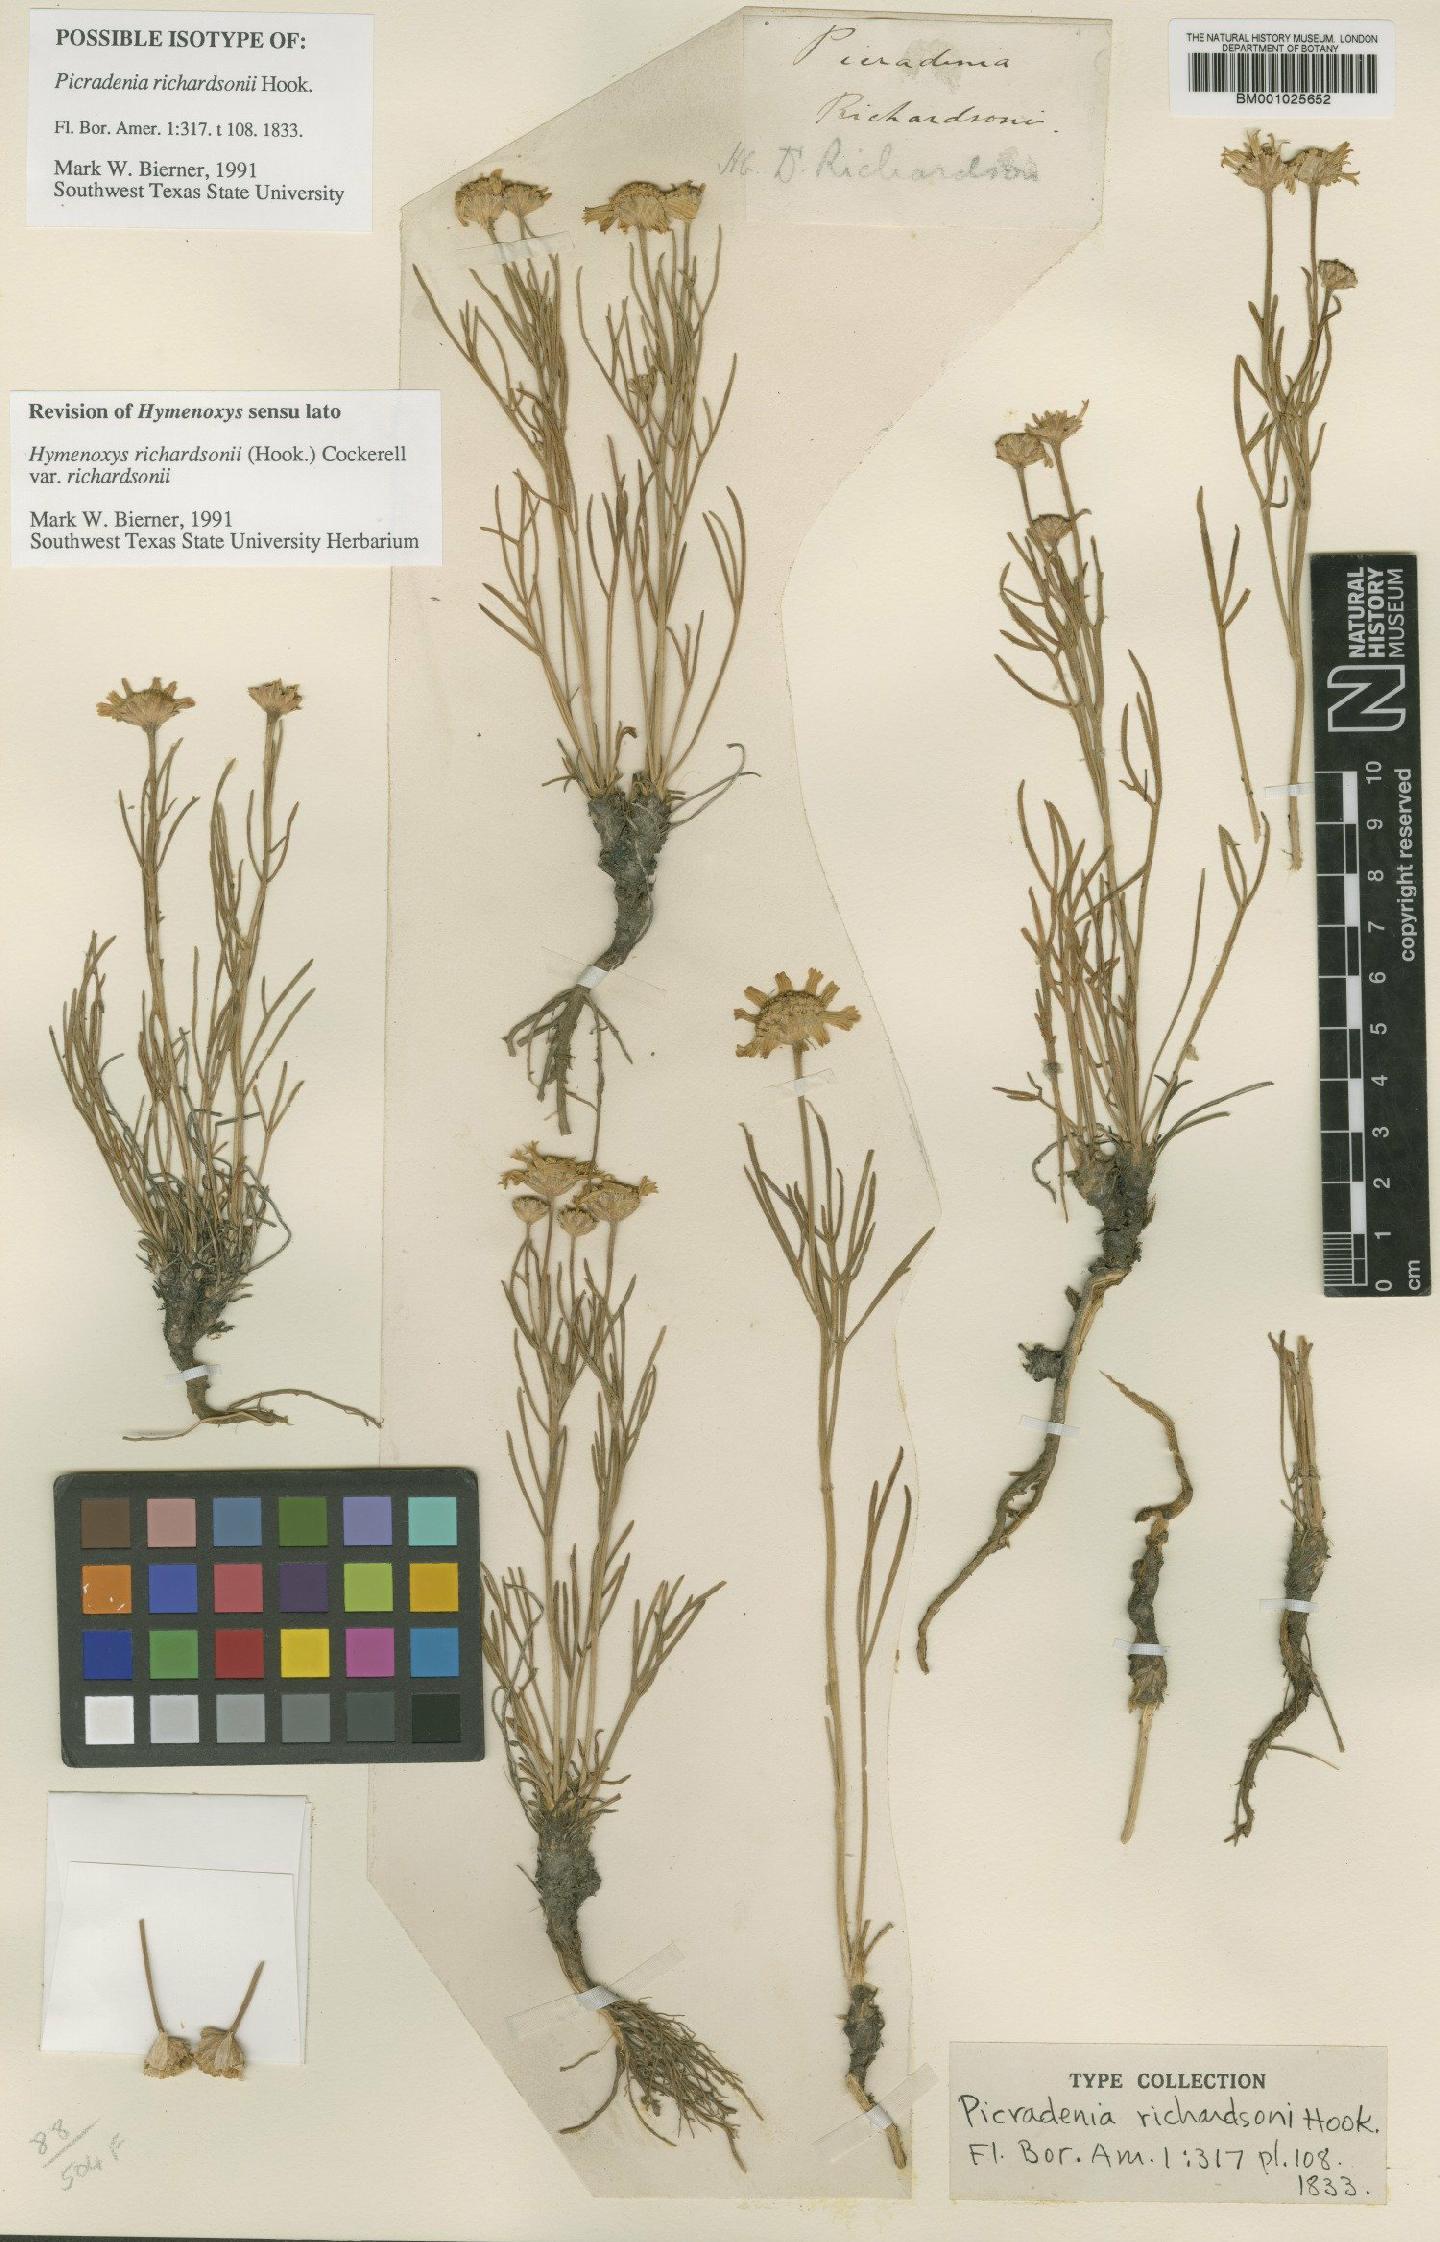 To NHMUK collection (Hymenoxys richardsonii var. richardsonii (Hook.) Cockerell; Isotype; NHMUK:ecatalogue:1186153)